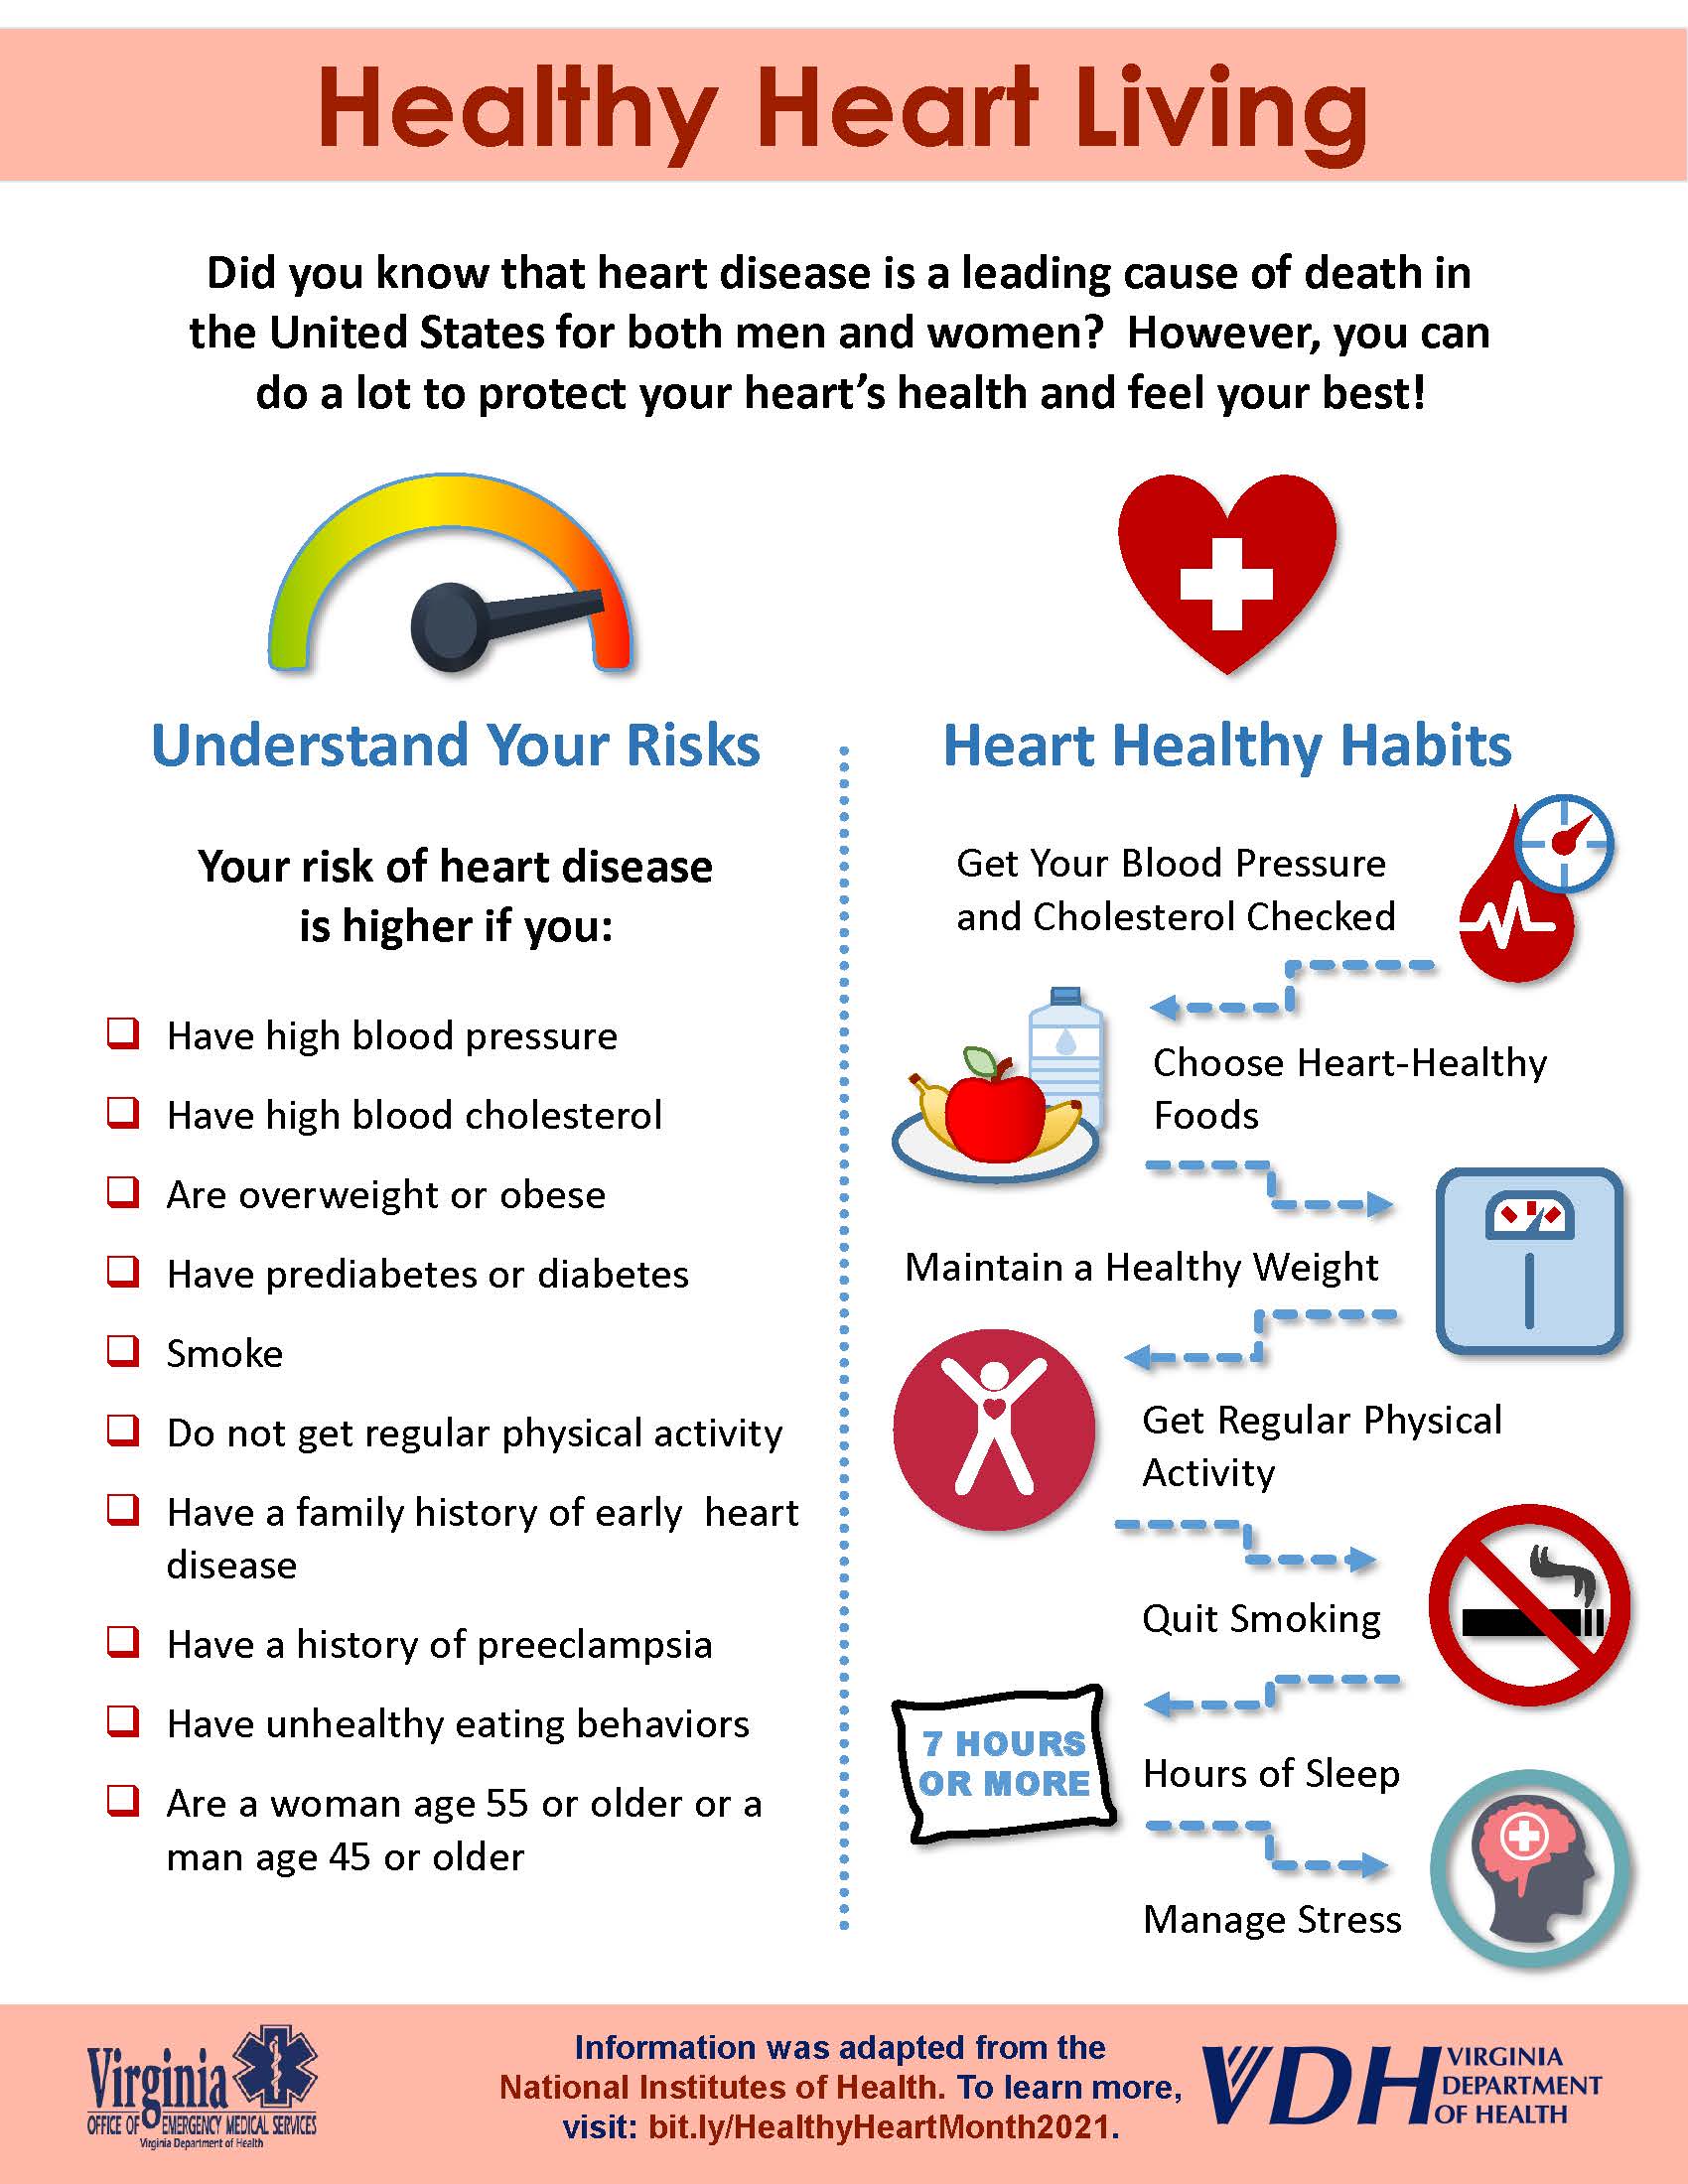 Infographic: Emergency Preparedness Tips for Older Loved Ones